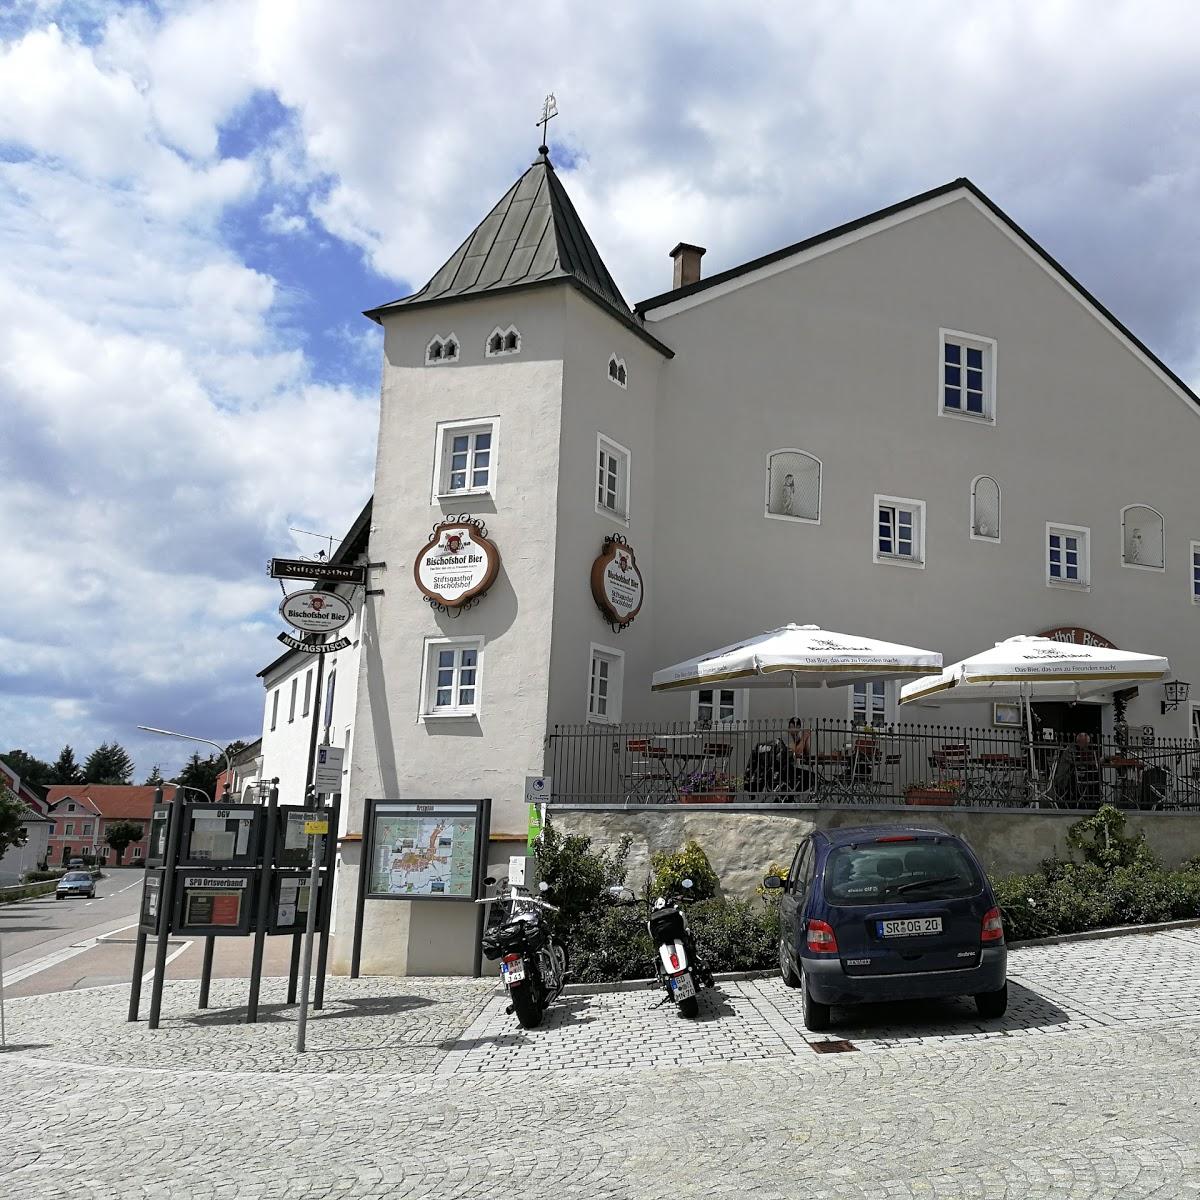 Restaurant "Stiftsgasthof" in  Aufhausen